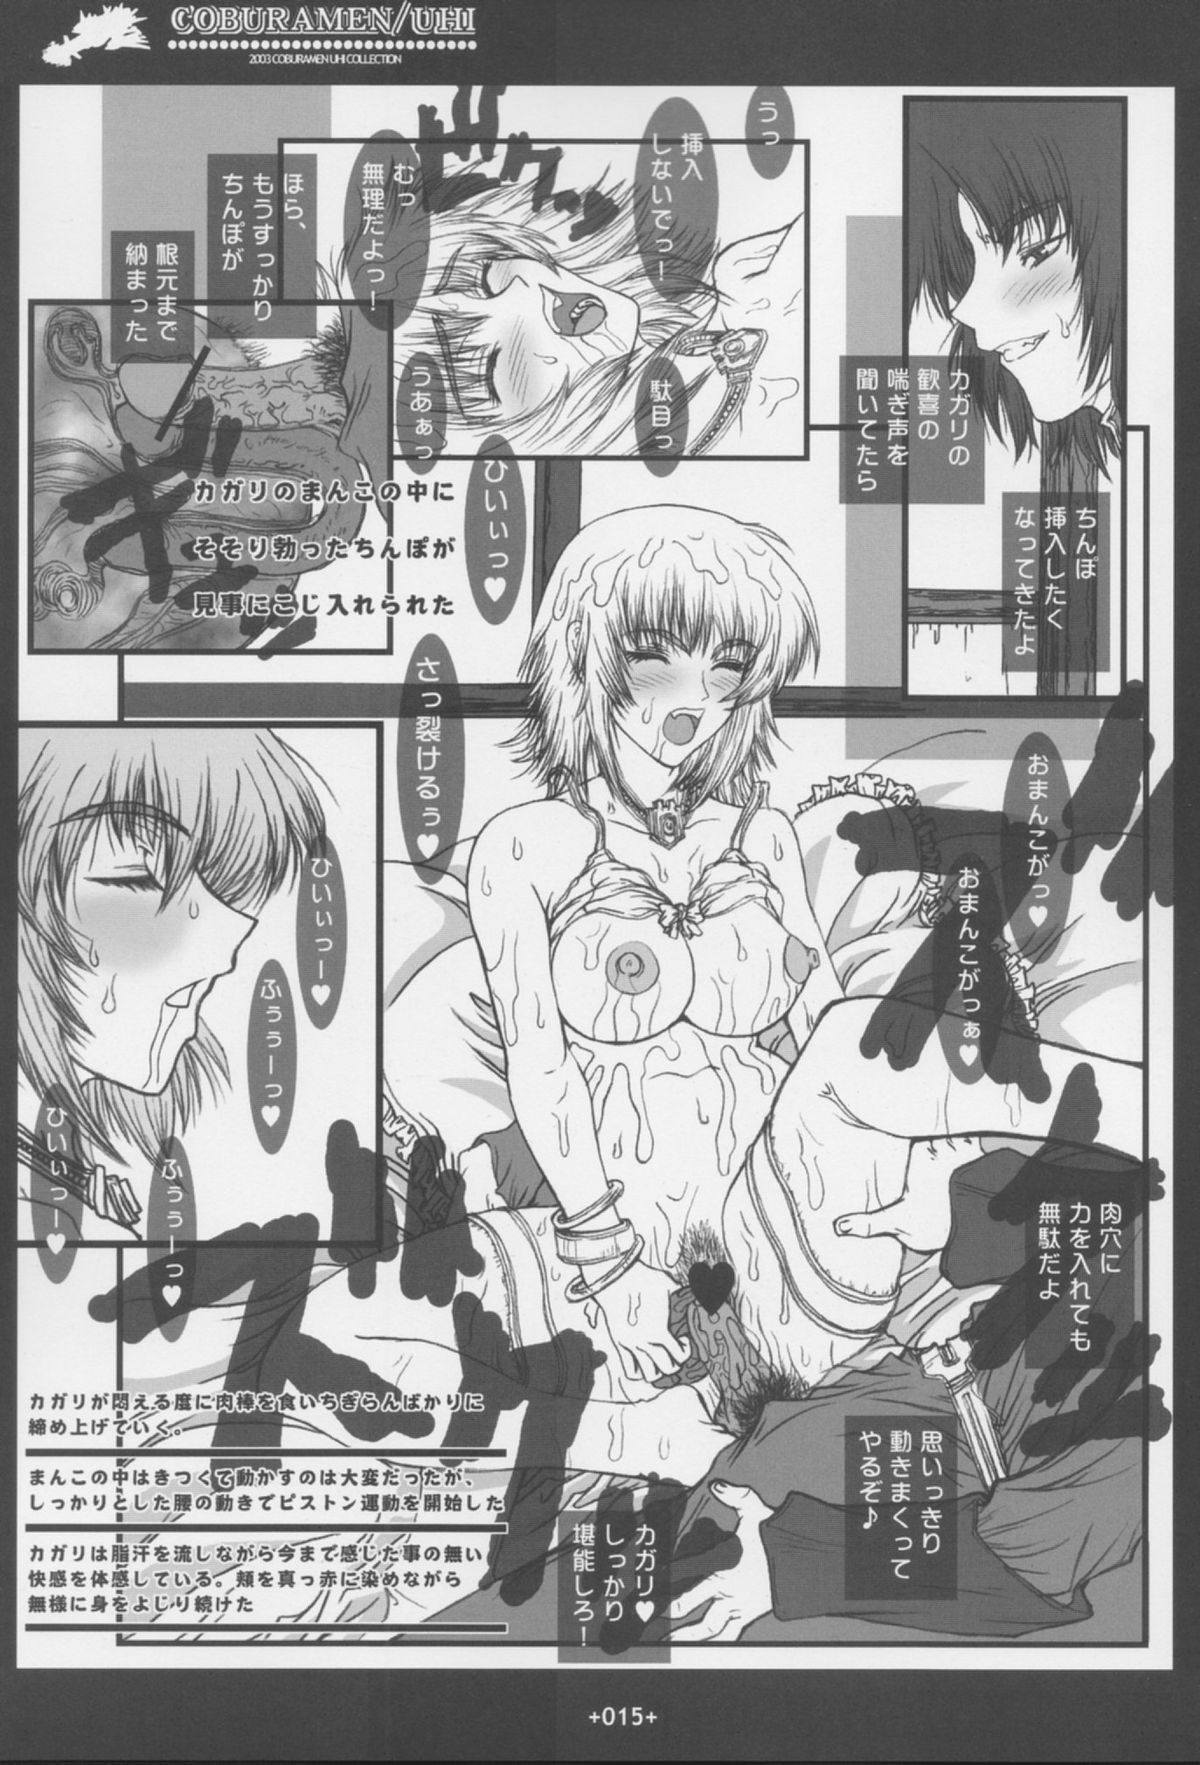 [Coburamenman (Uhhii)] GS (Gundam Seed) page 16 full